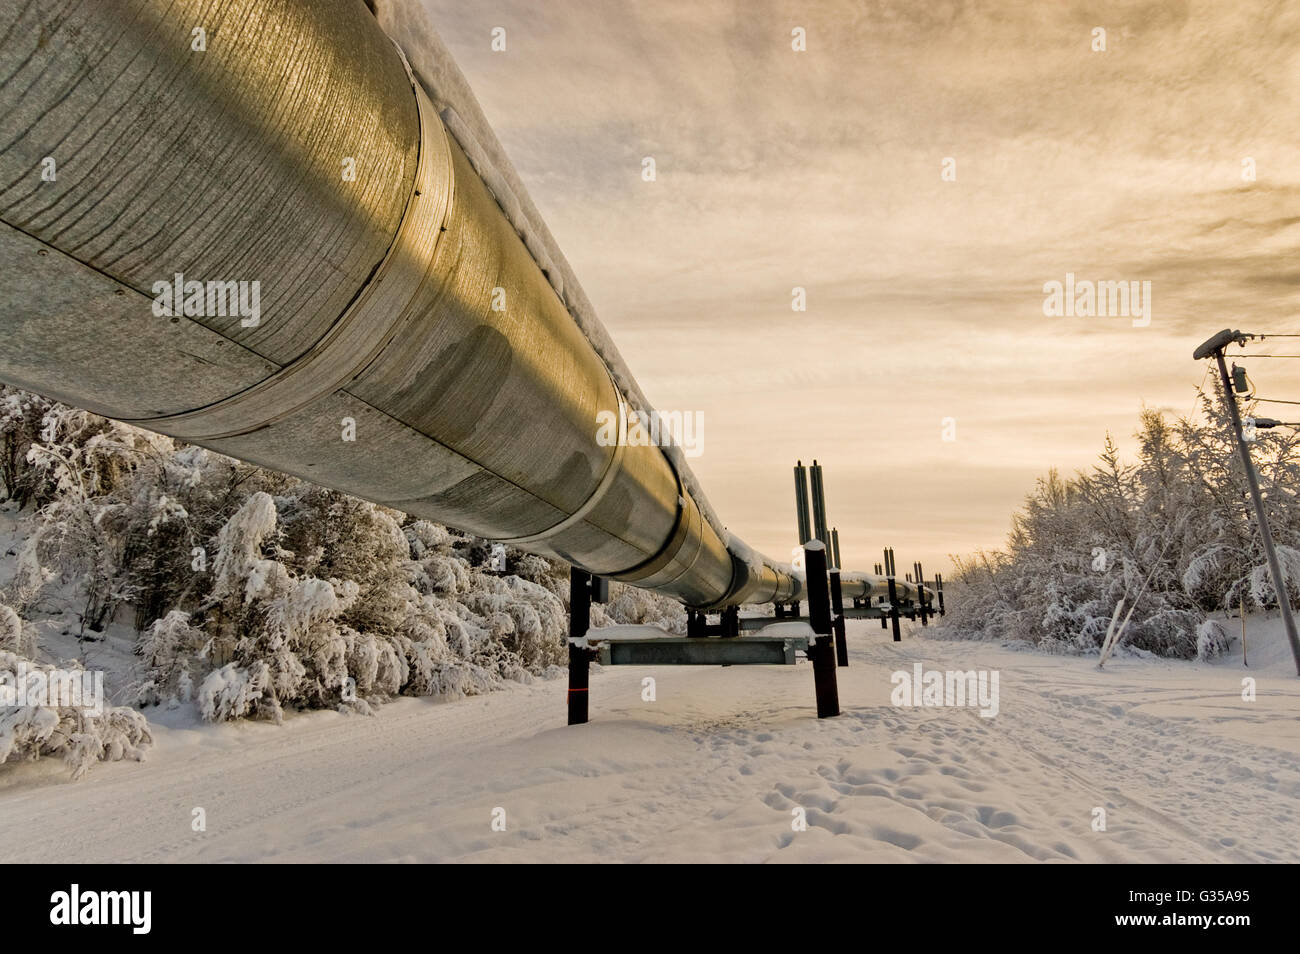 Trans-Alaska Oil Pipeline Stock Photo